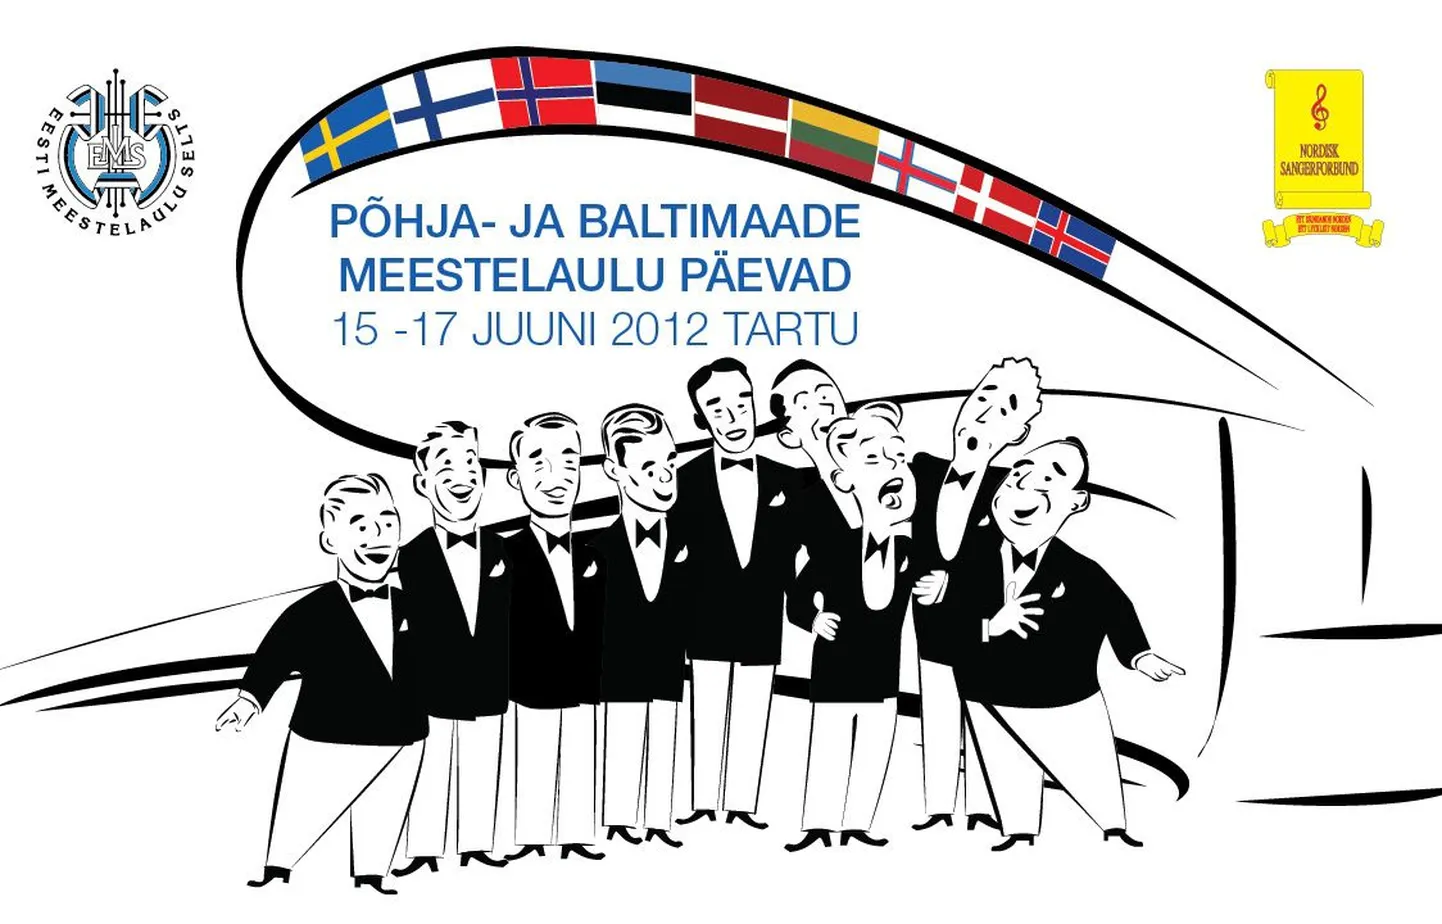 Põhja- ja Baltimaade meestelaulu päevade logo.